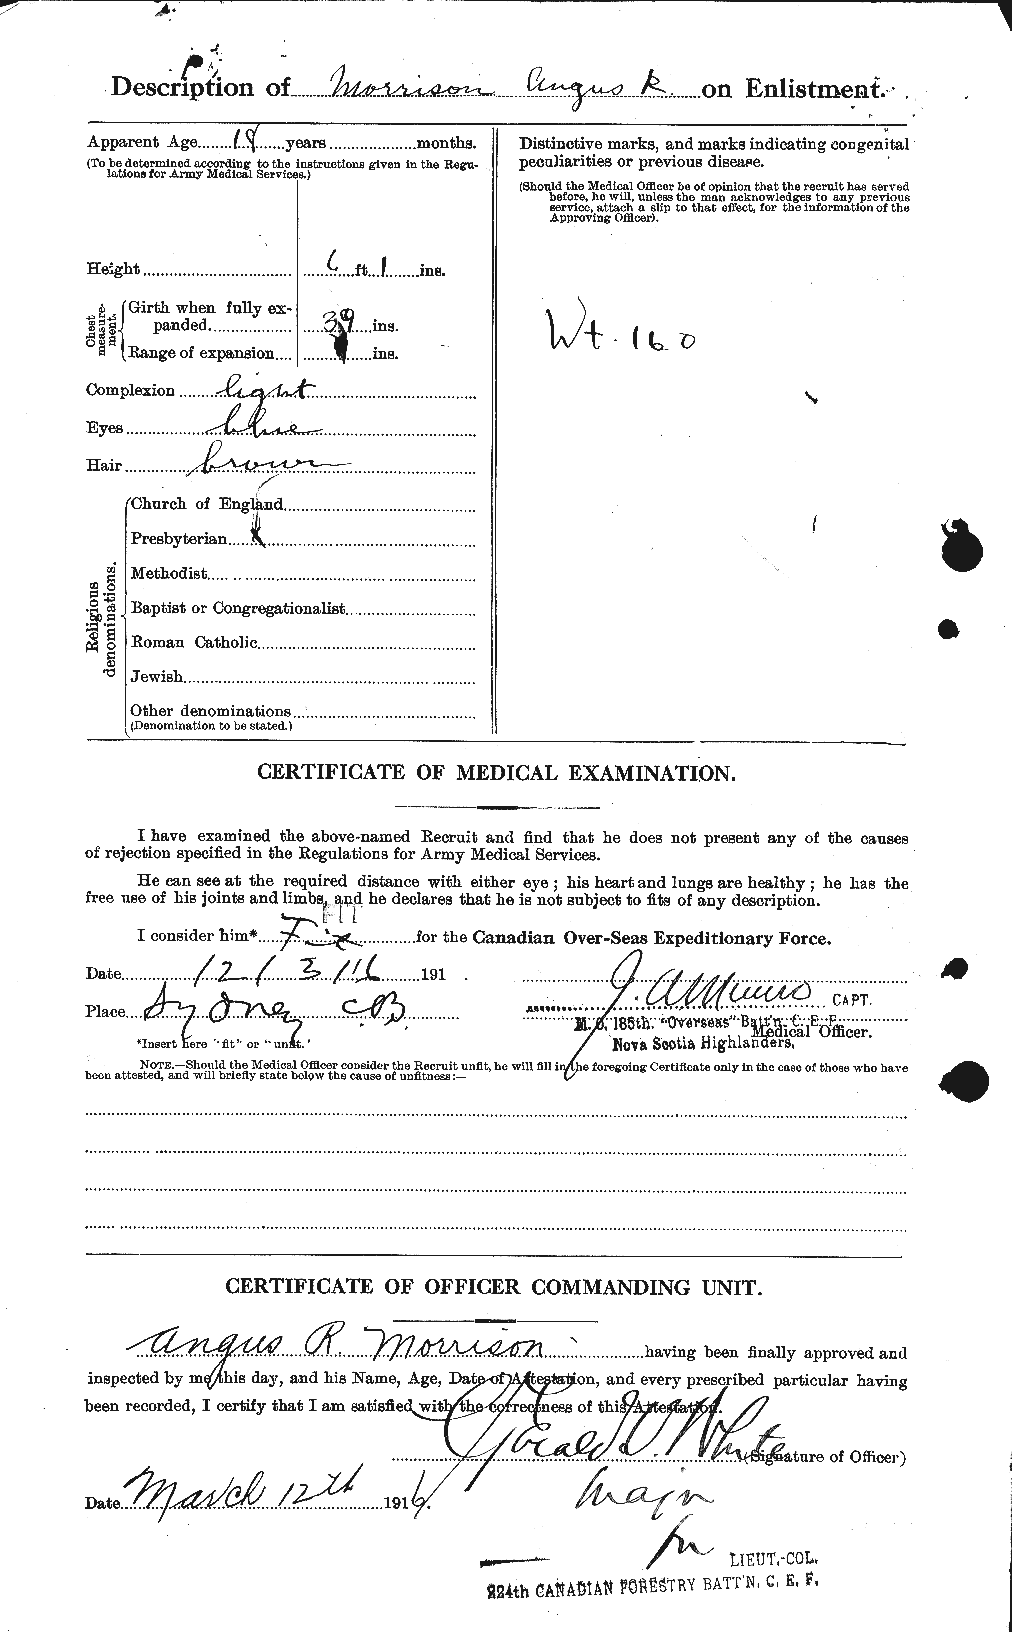 Dossiers du Personnel de la Première Guerre mondiale - CEC 511055b